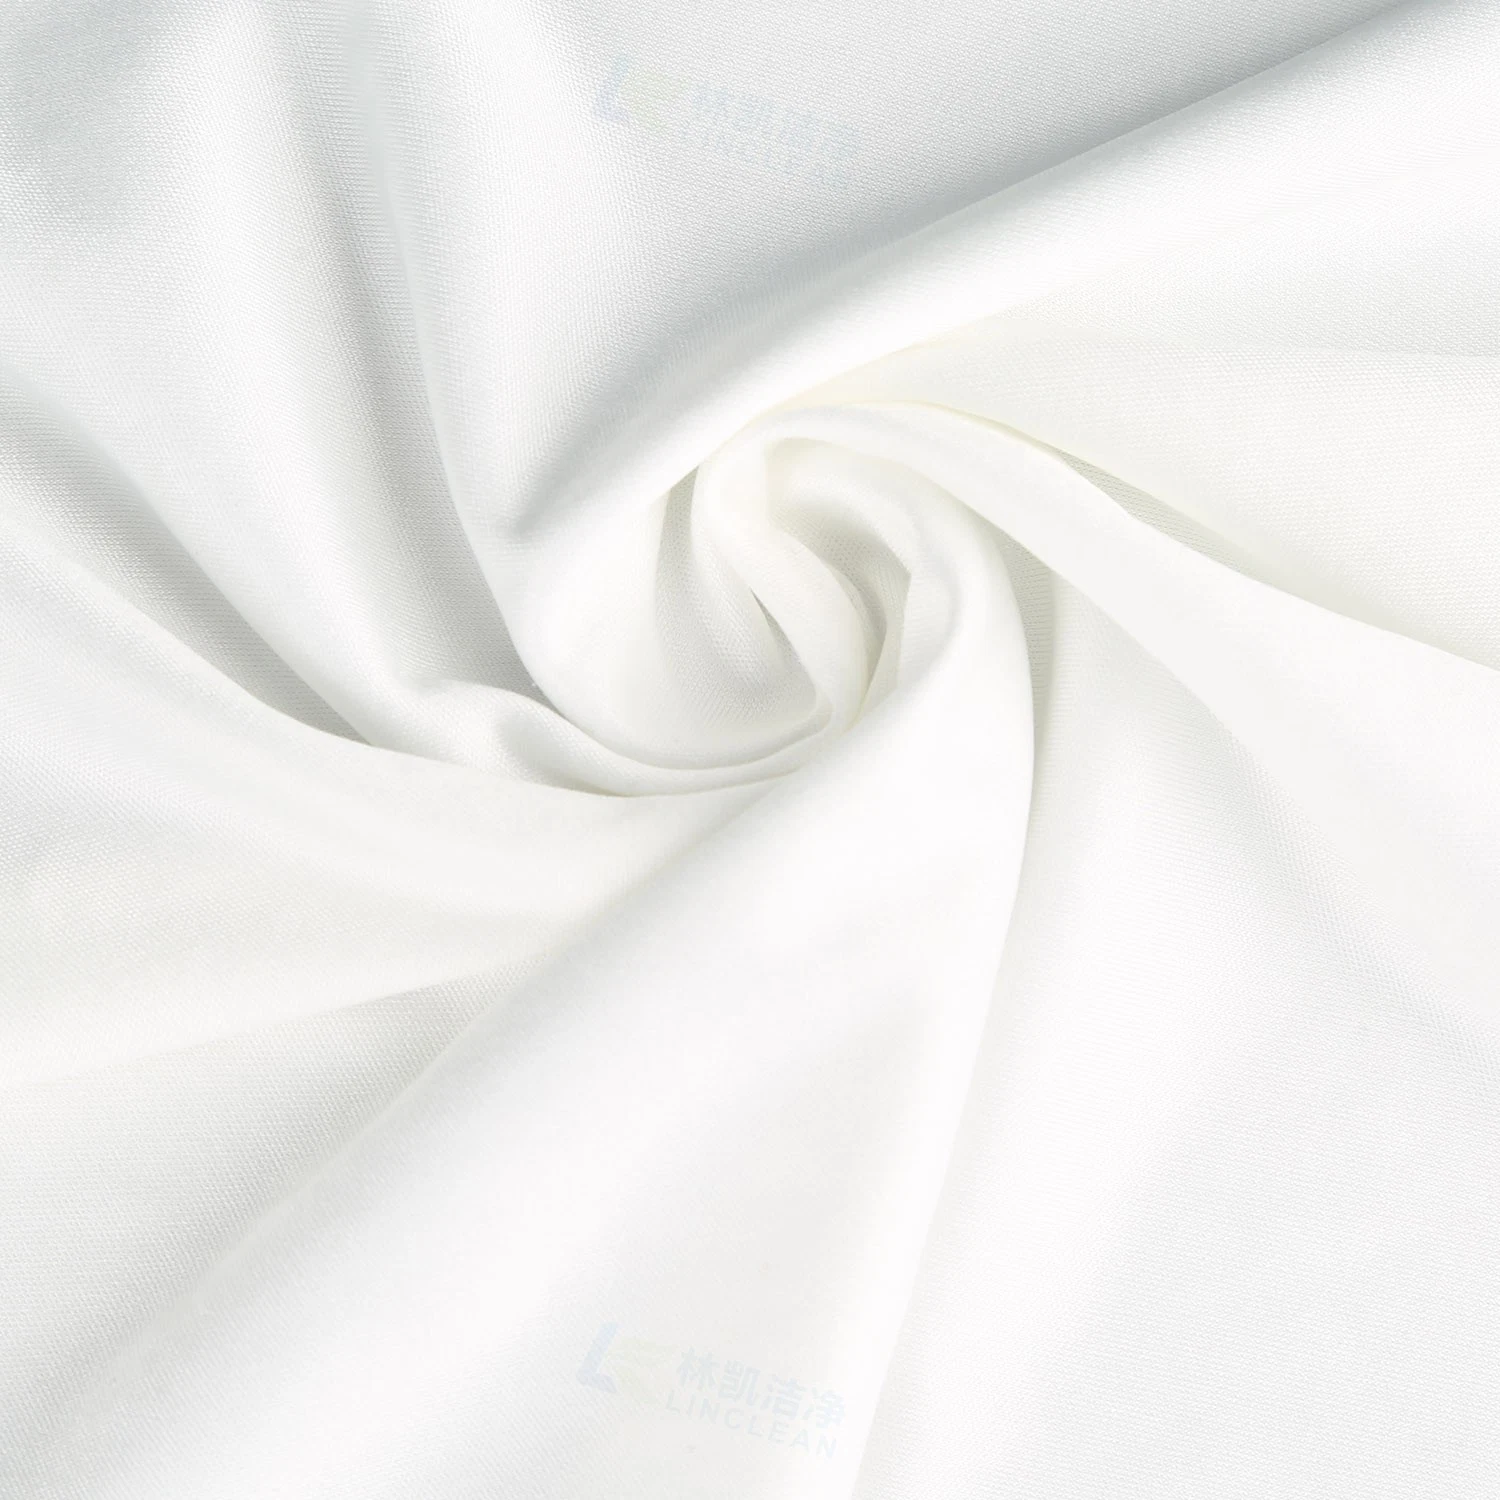 Nouveau chiffon en microfibre sans poussière, lingettes de nettoyage en tissu non tissé pour salle blanche.